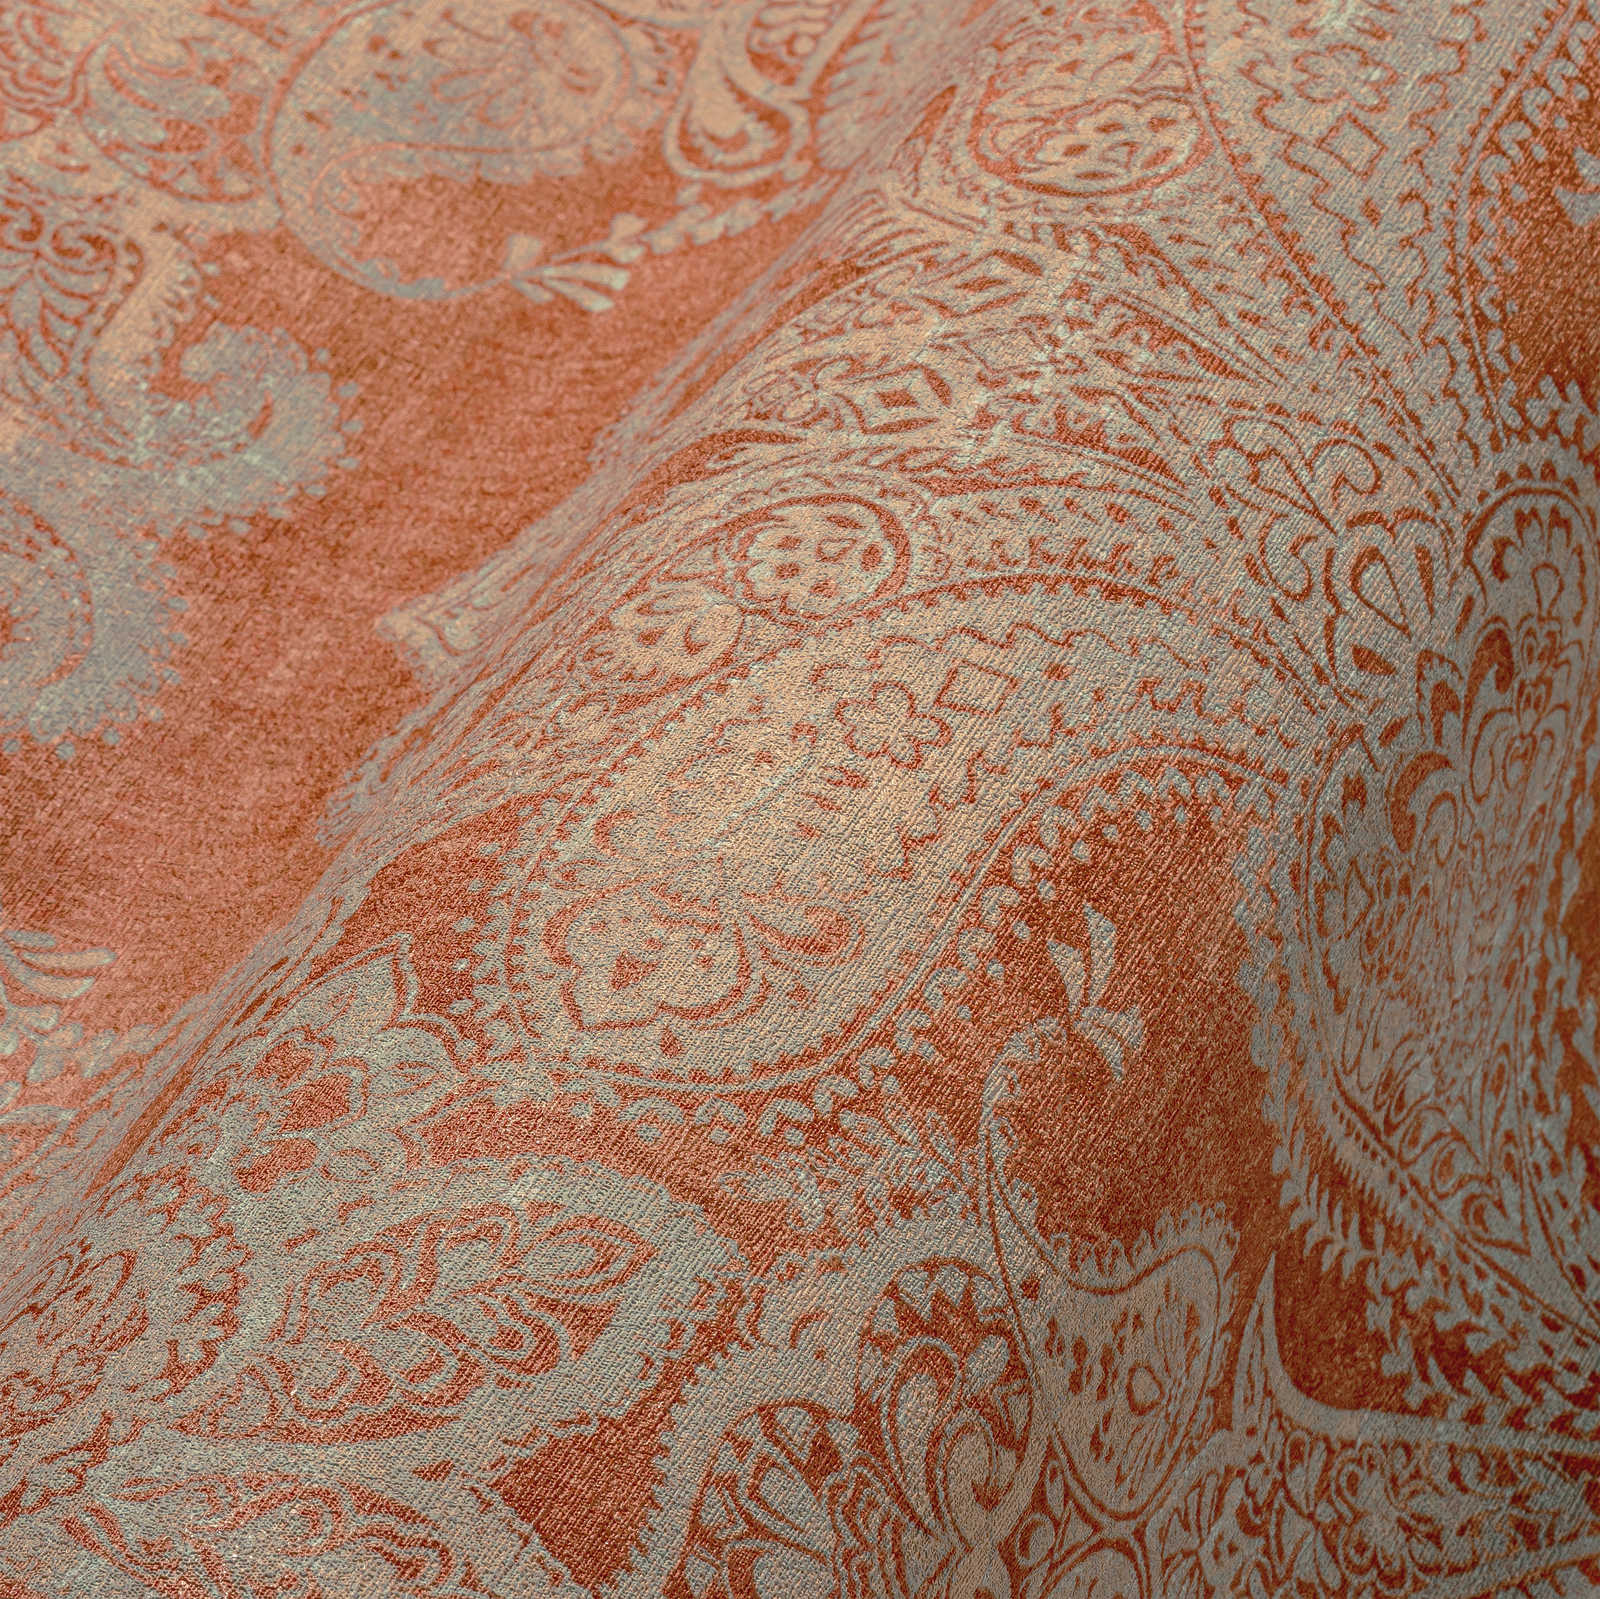             Papel pintado no tejido de estilo barroco con ornamentos - naranja, turquesa, gris
        